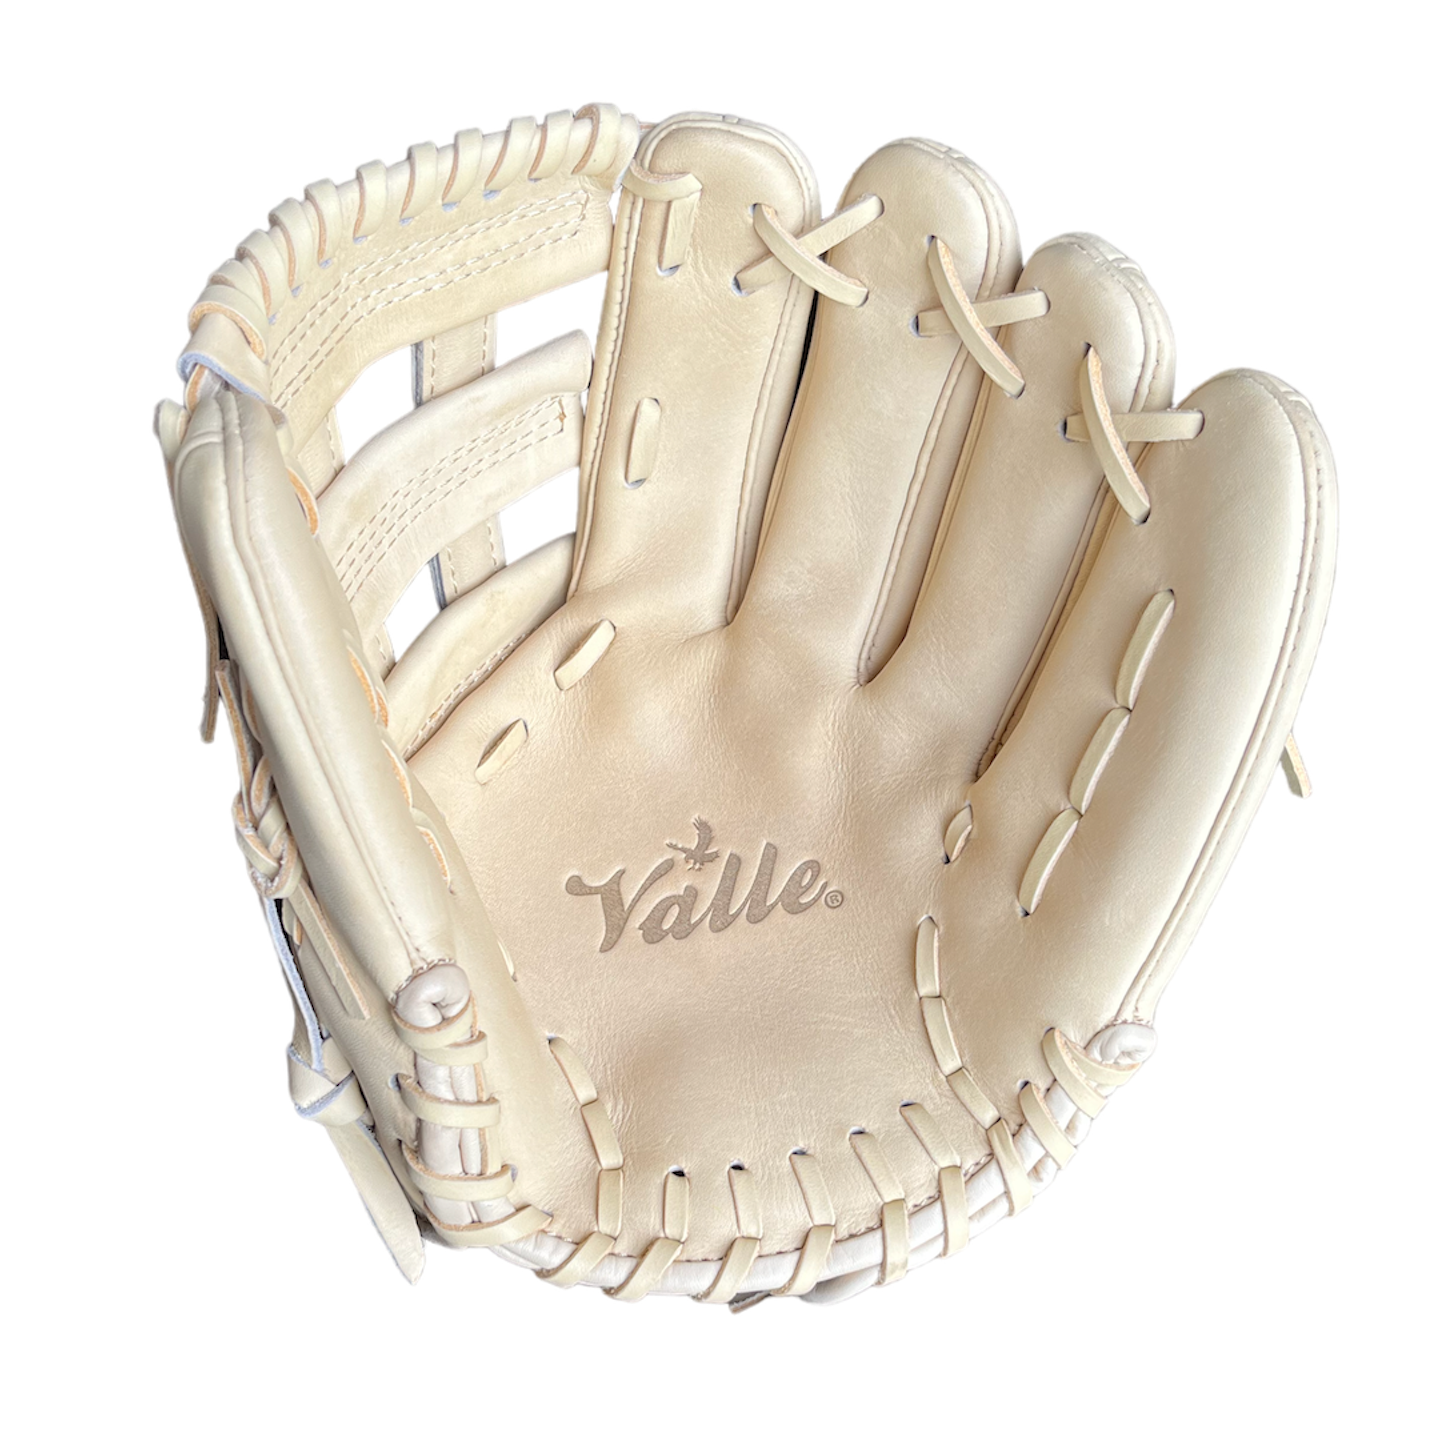 Valle 11.75" Game Glove